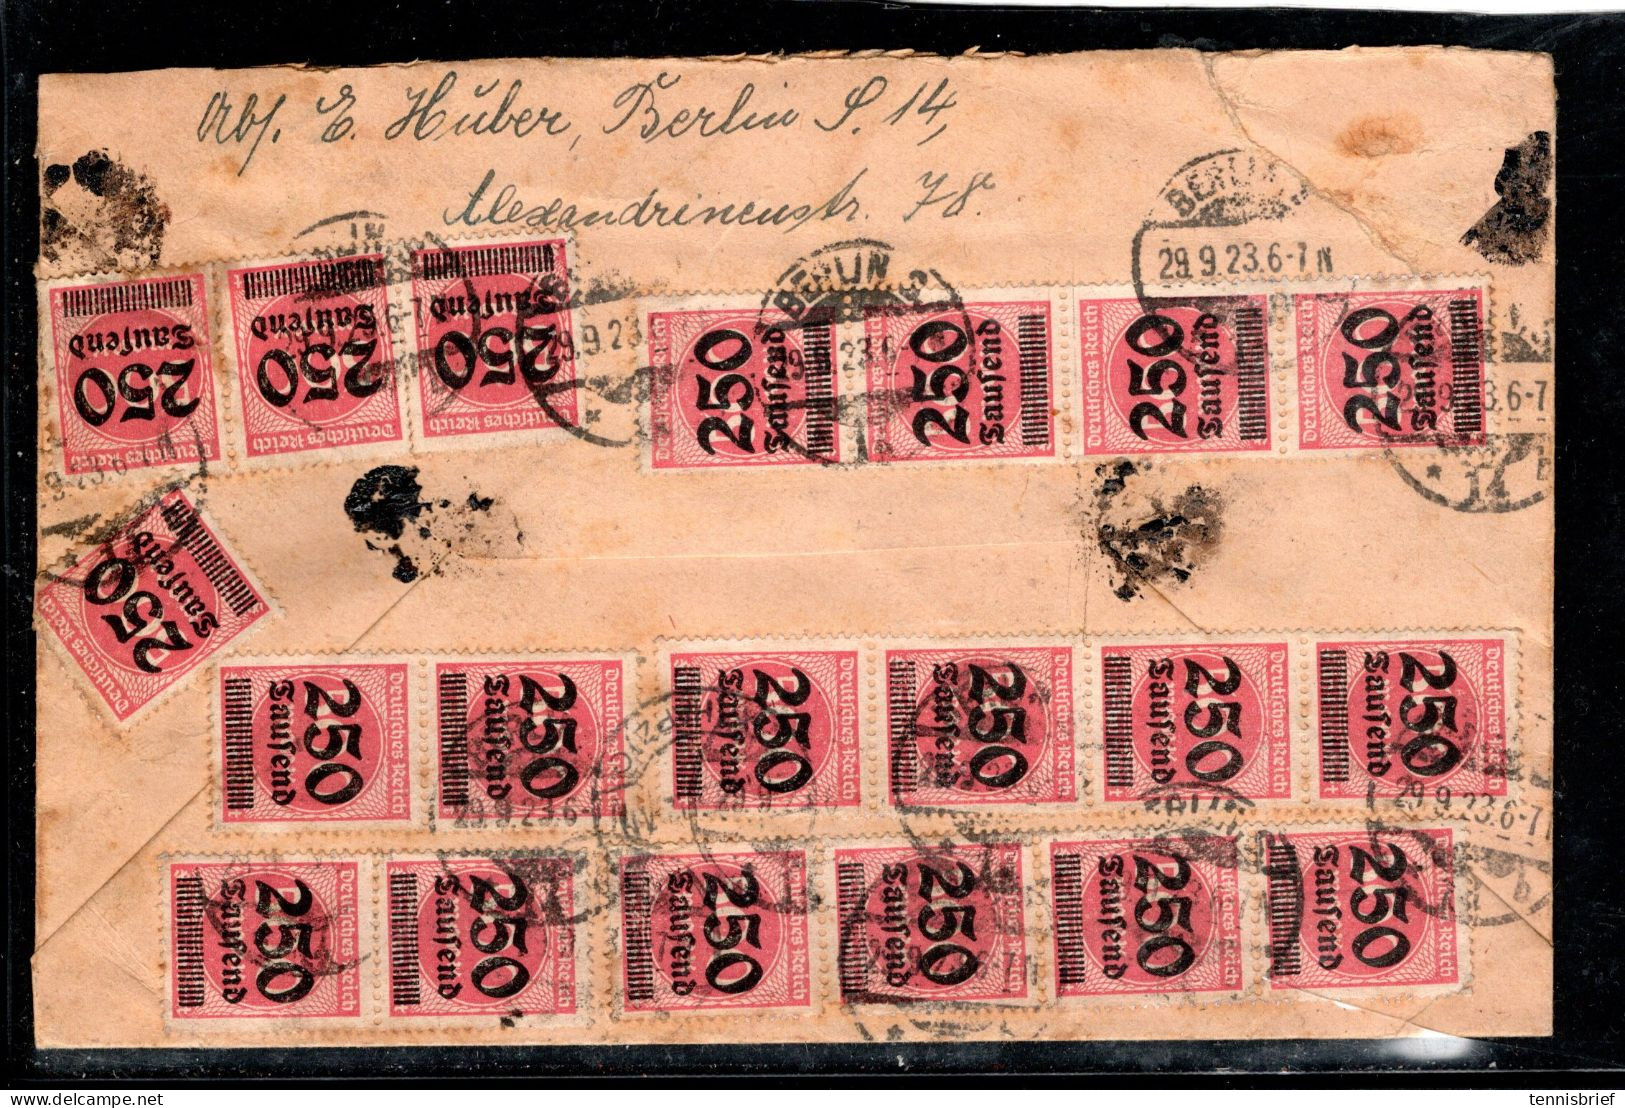 1923, (29.9.), Portoger. Wert-Brief Mit Massen-MeF 250 Tsd.Aufdr. ,34 Marken Vor Und Rs. , Als Mef RR !  #227 - Briefe U. Dokumente